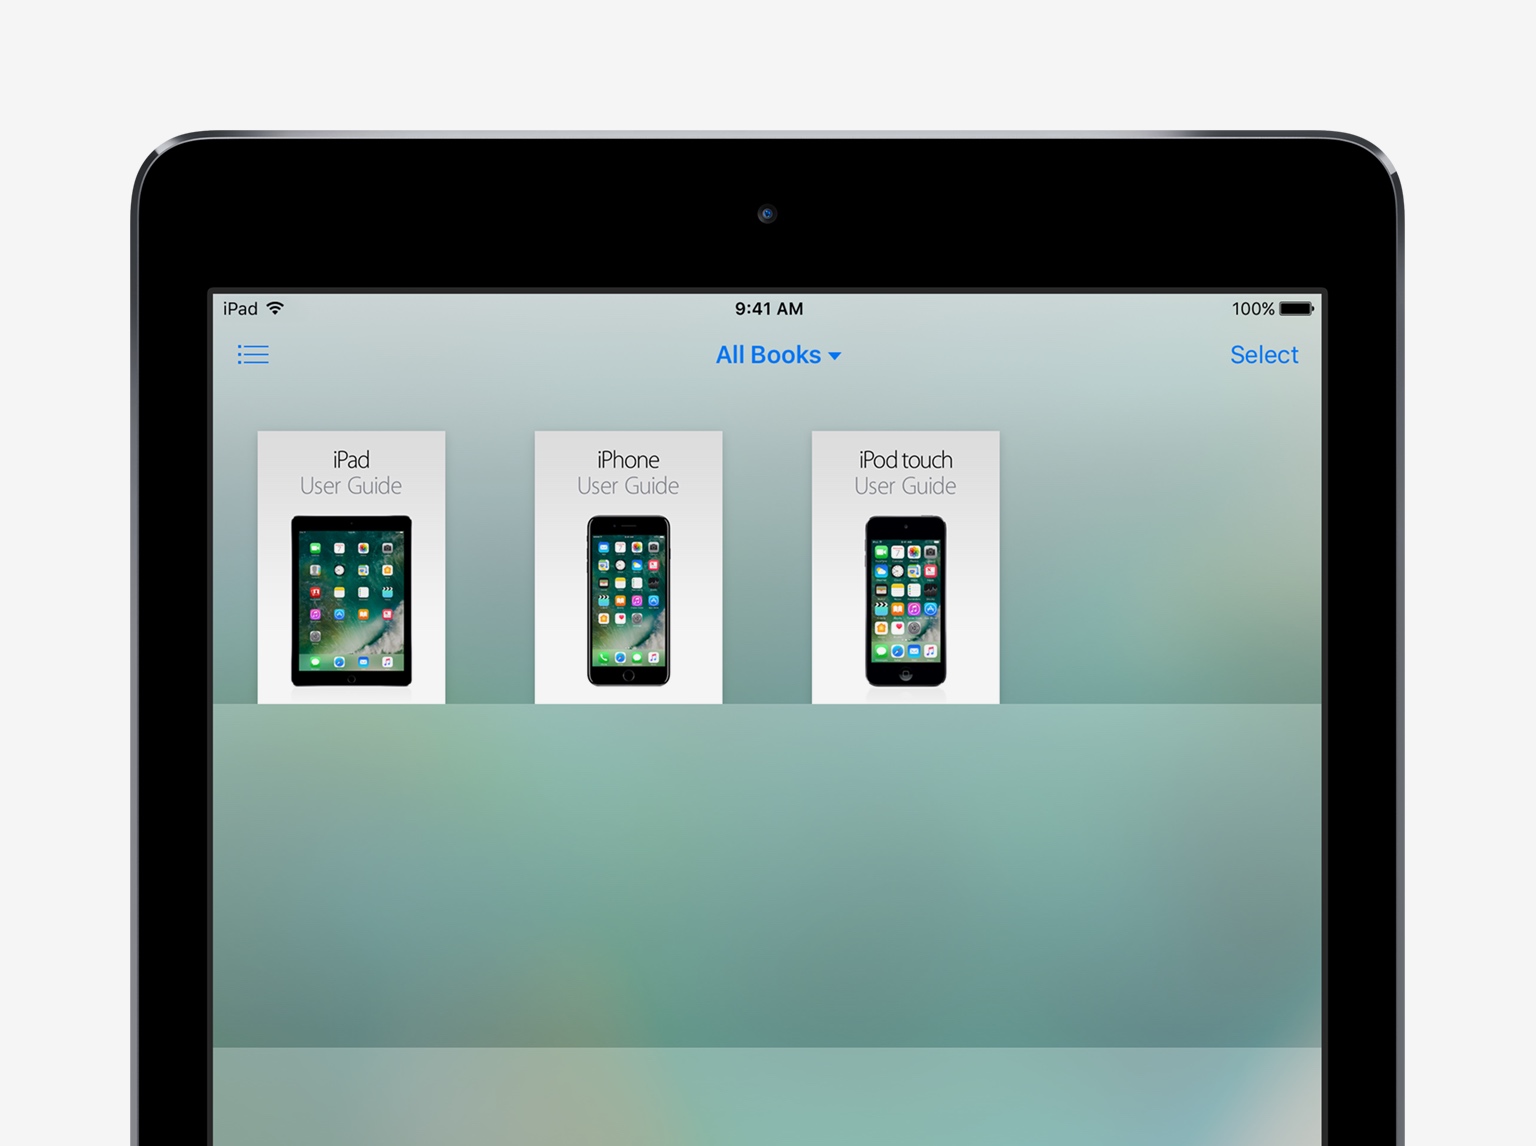 Một số thủ thuật và mẹo nhỏ hữu ích trên thiết bị iOS 10 – iPad (Phần 3)